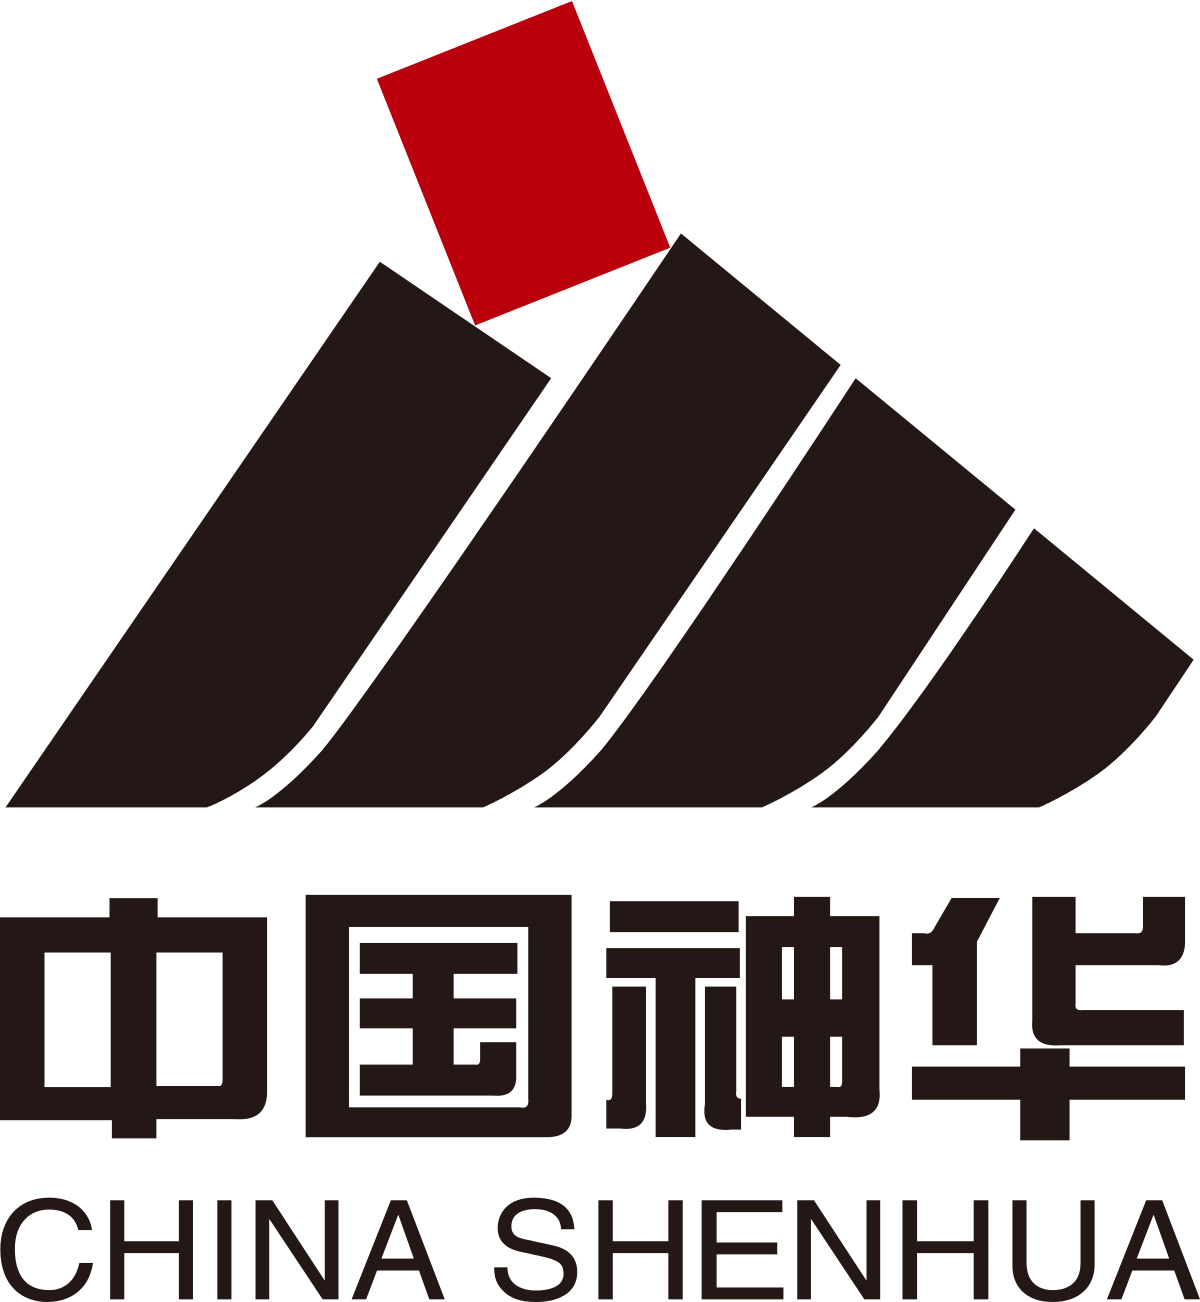 Shenhua Group Corp